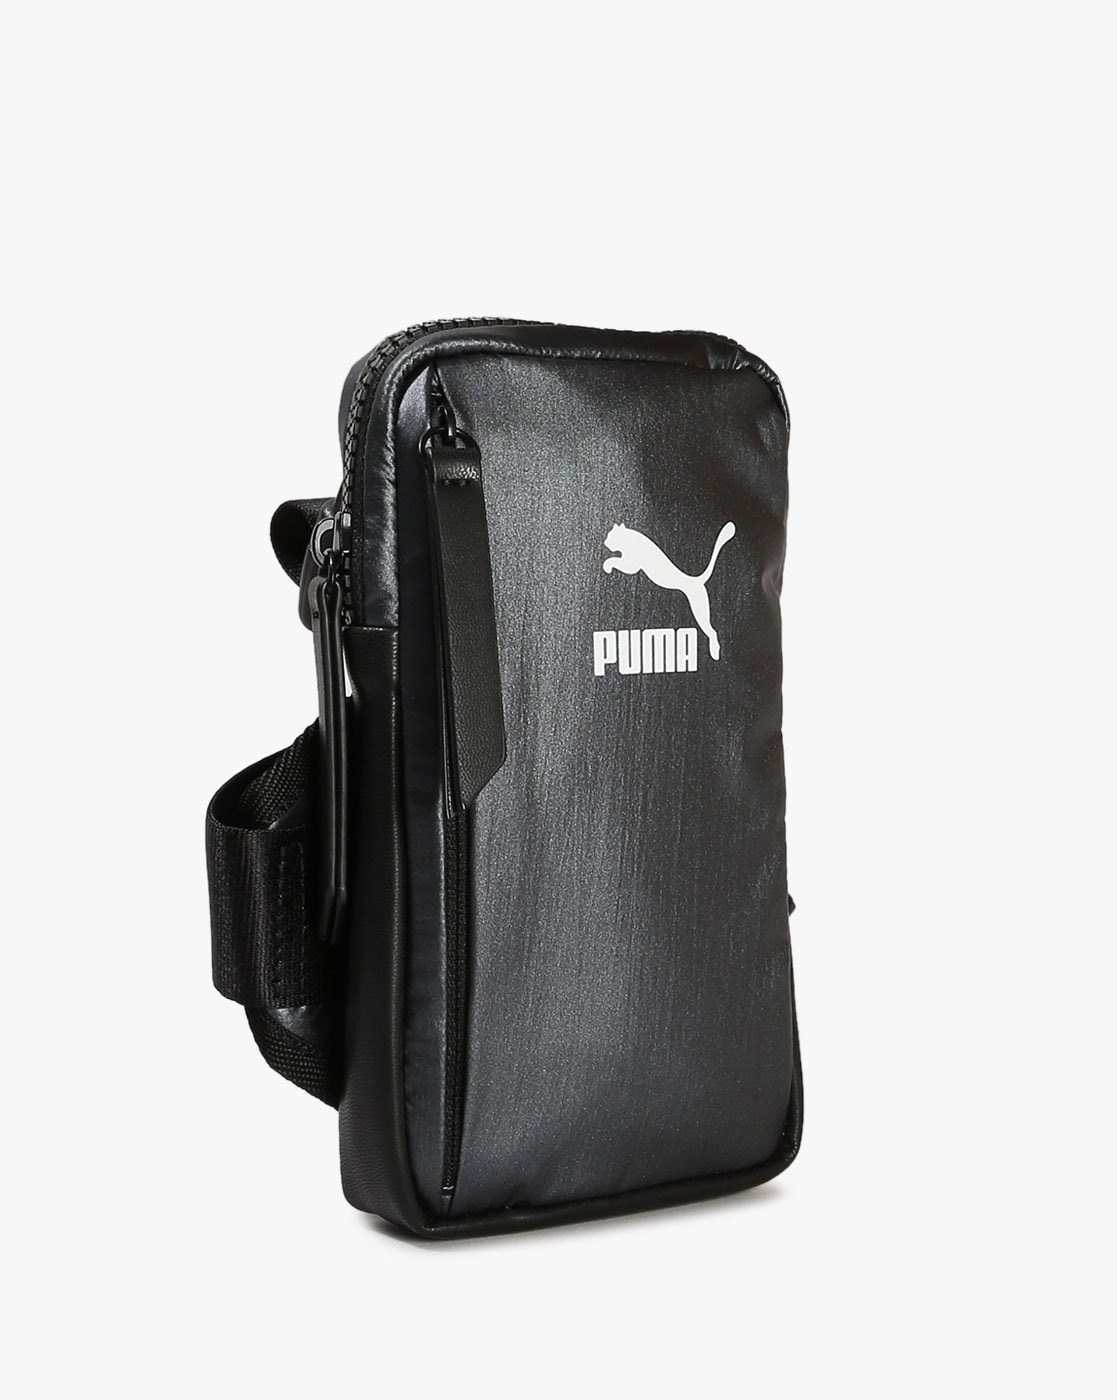 PUMA Archer Crossbody Bag | PUMA